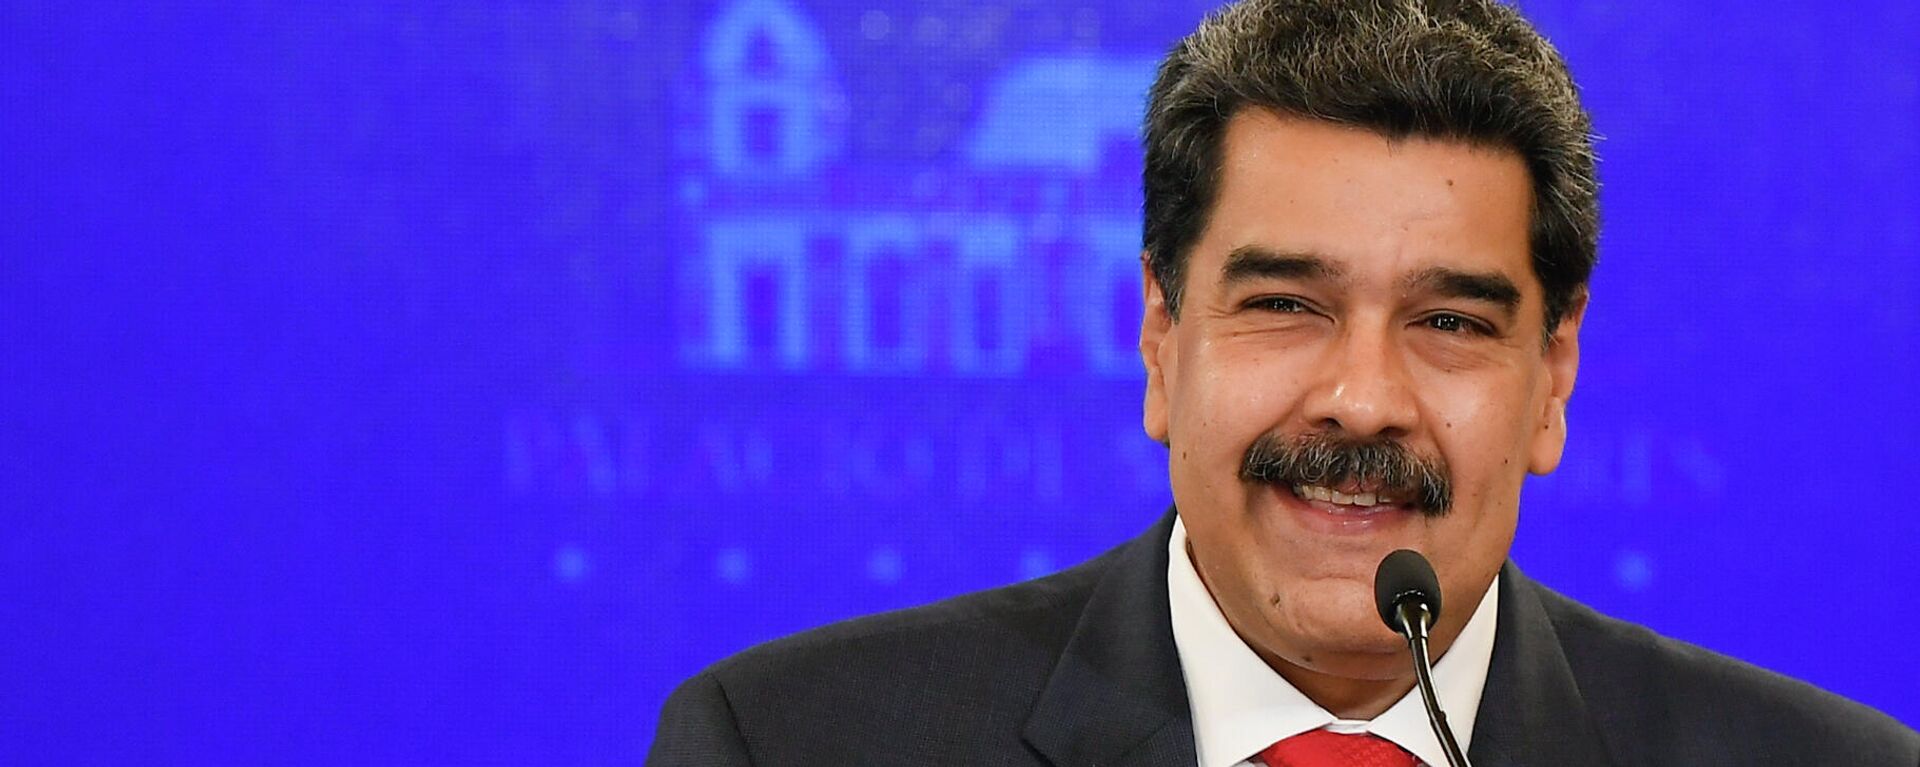 Nicolás Maduro, presidente de Venezuela - Sputnik Mundo, 1920, 10.11.2021